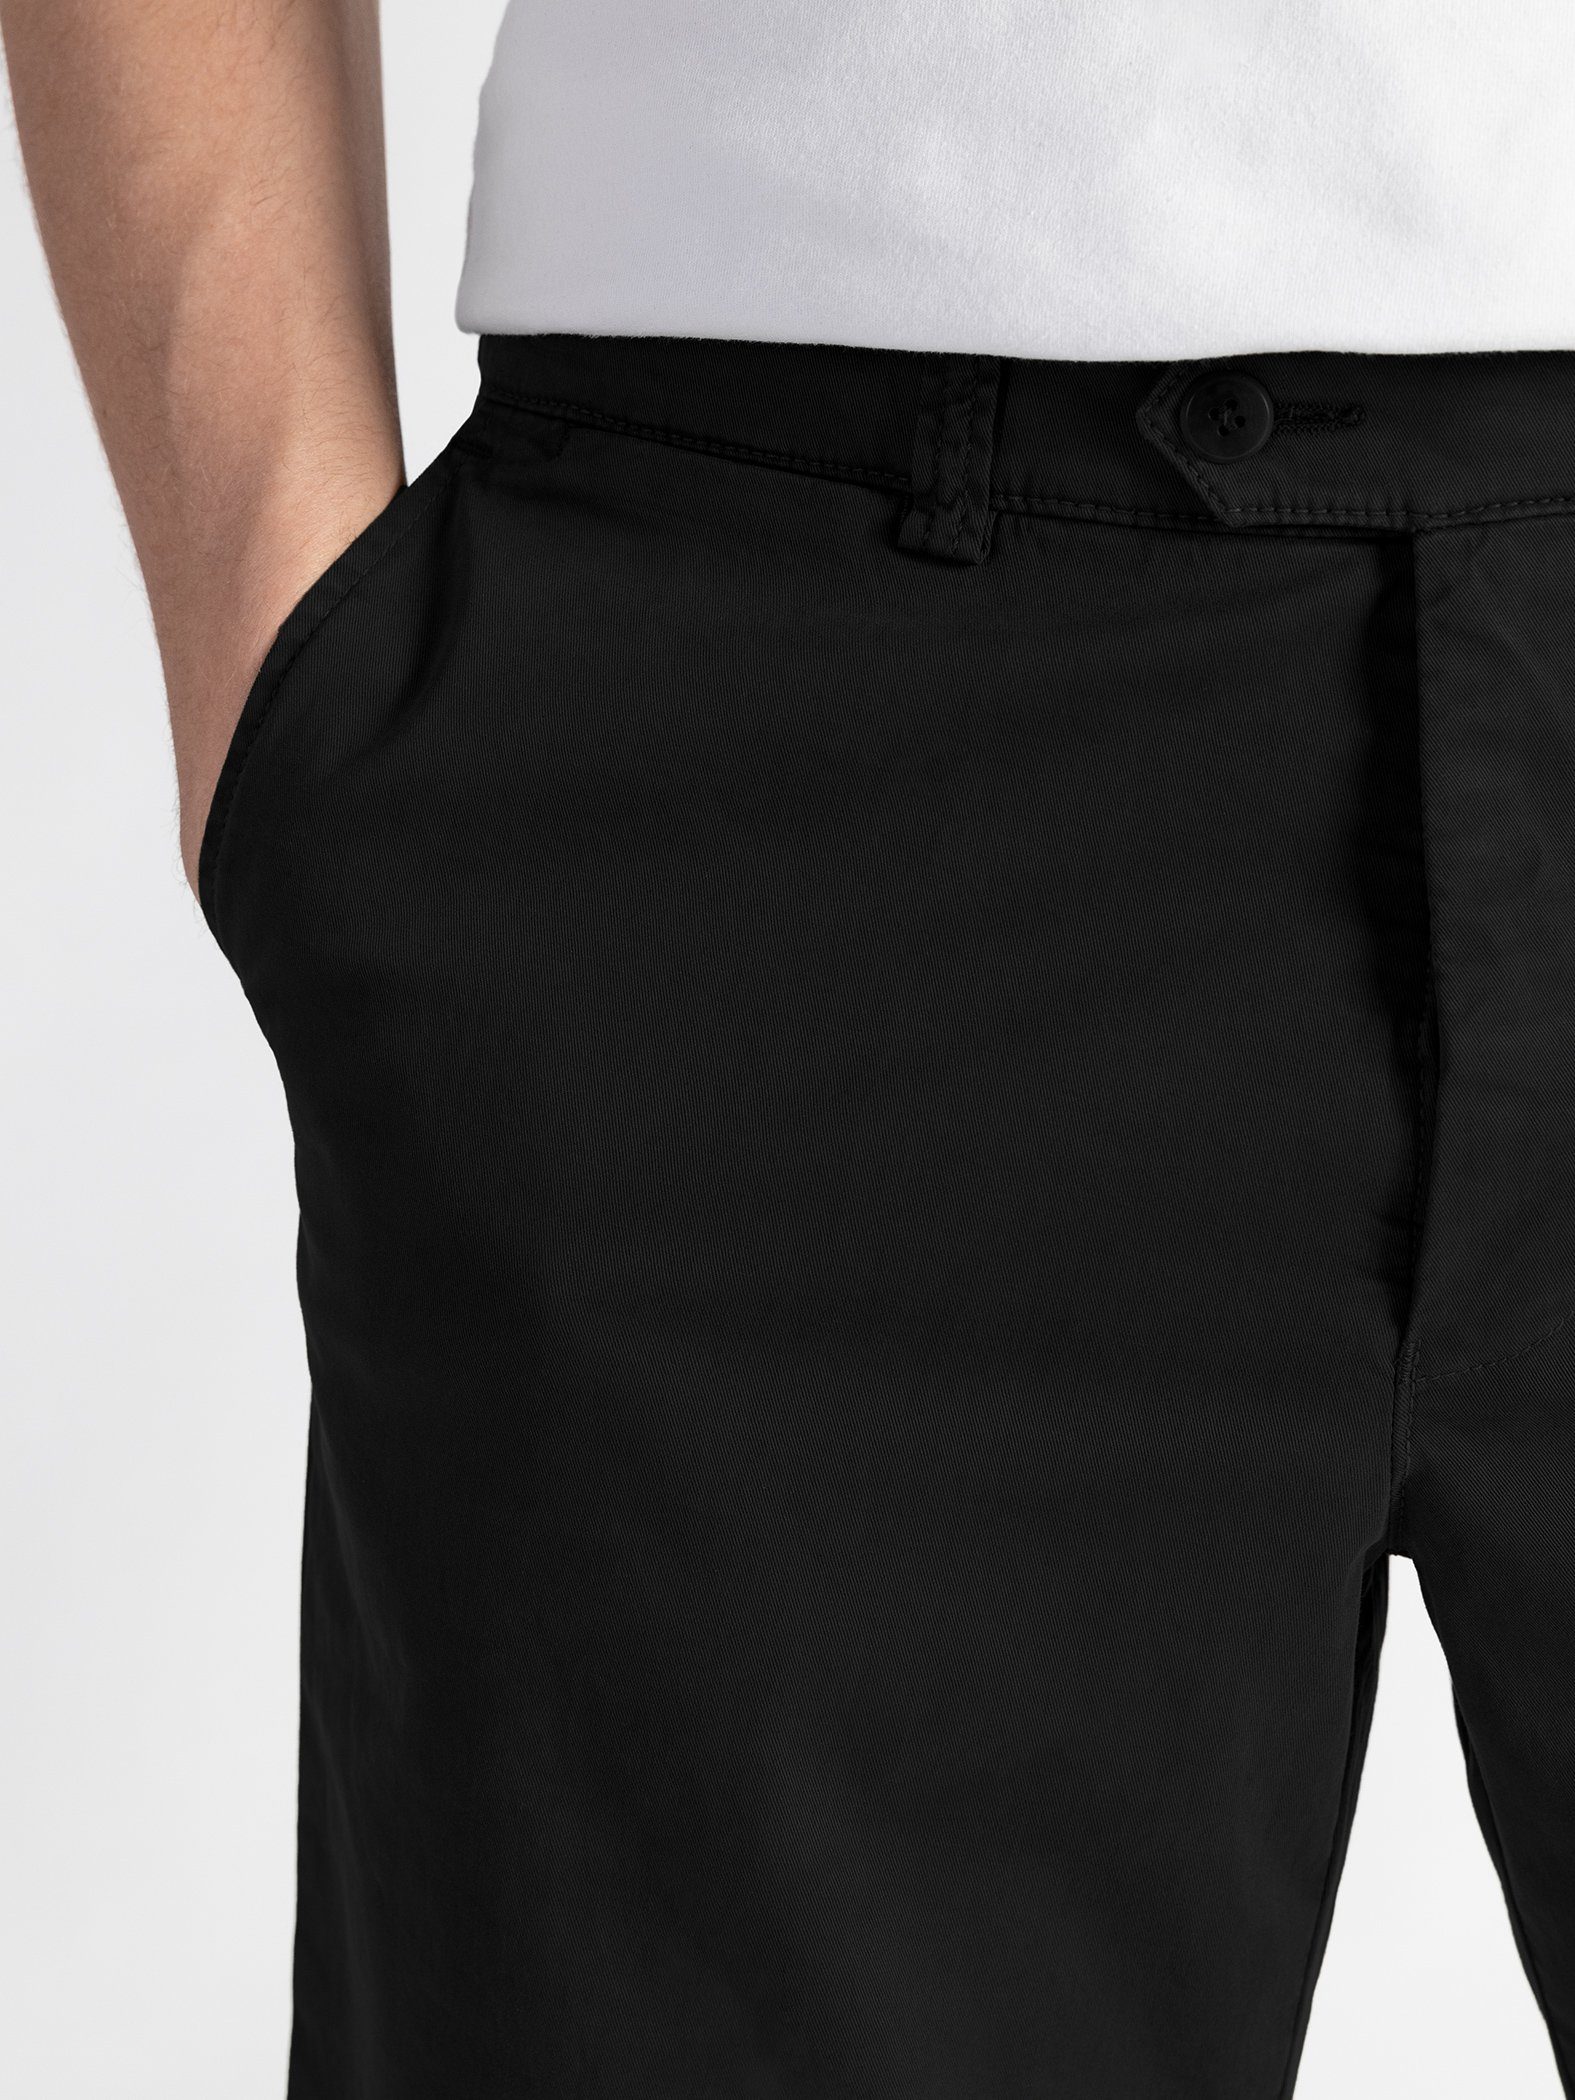 TwoMates Schwarz Farbauswahl, mit Bund, elastischem Shorts Shorts GOTS-zertifiziert